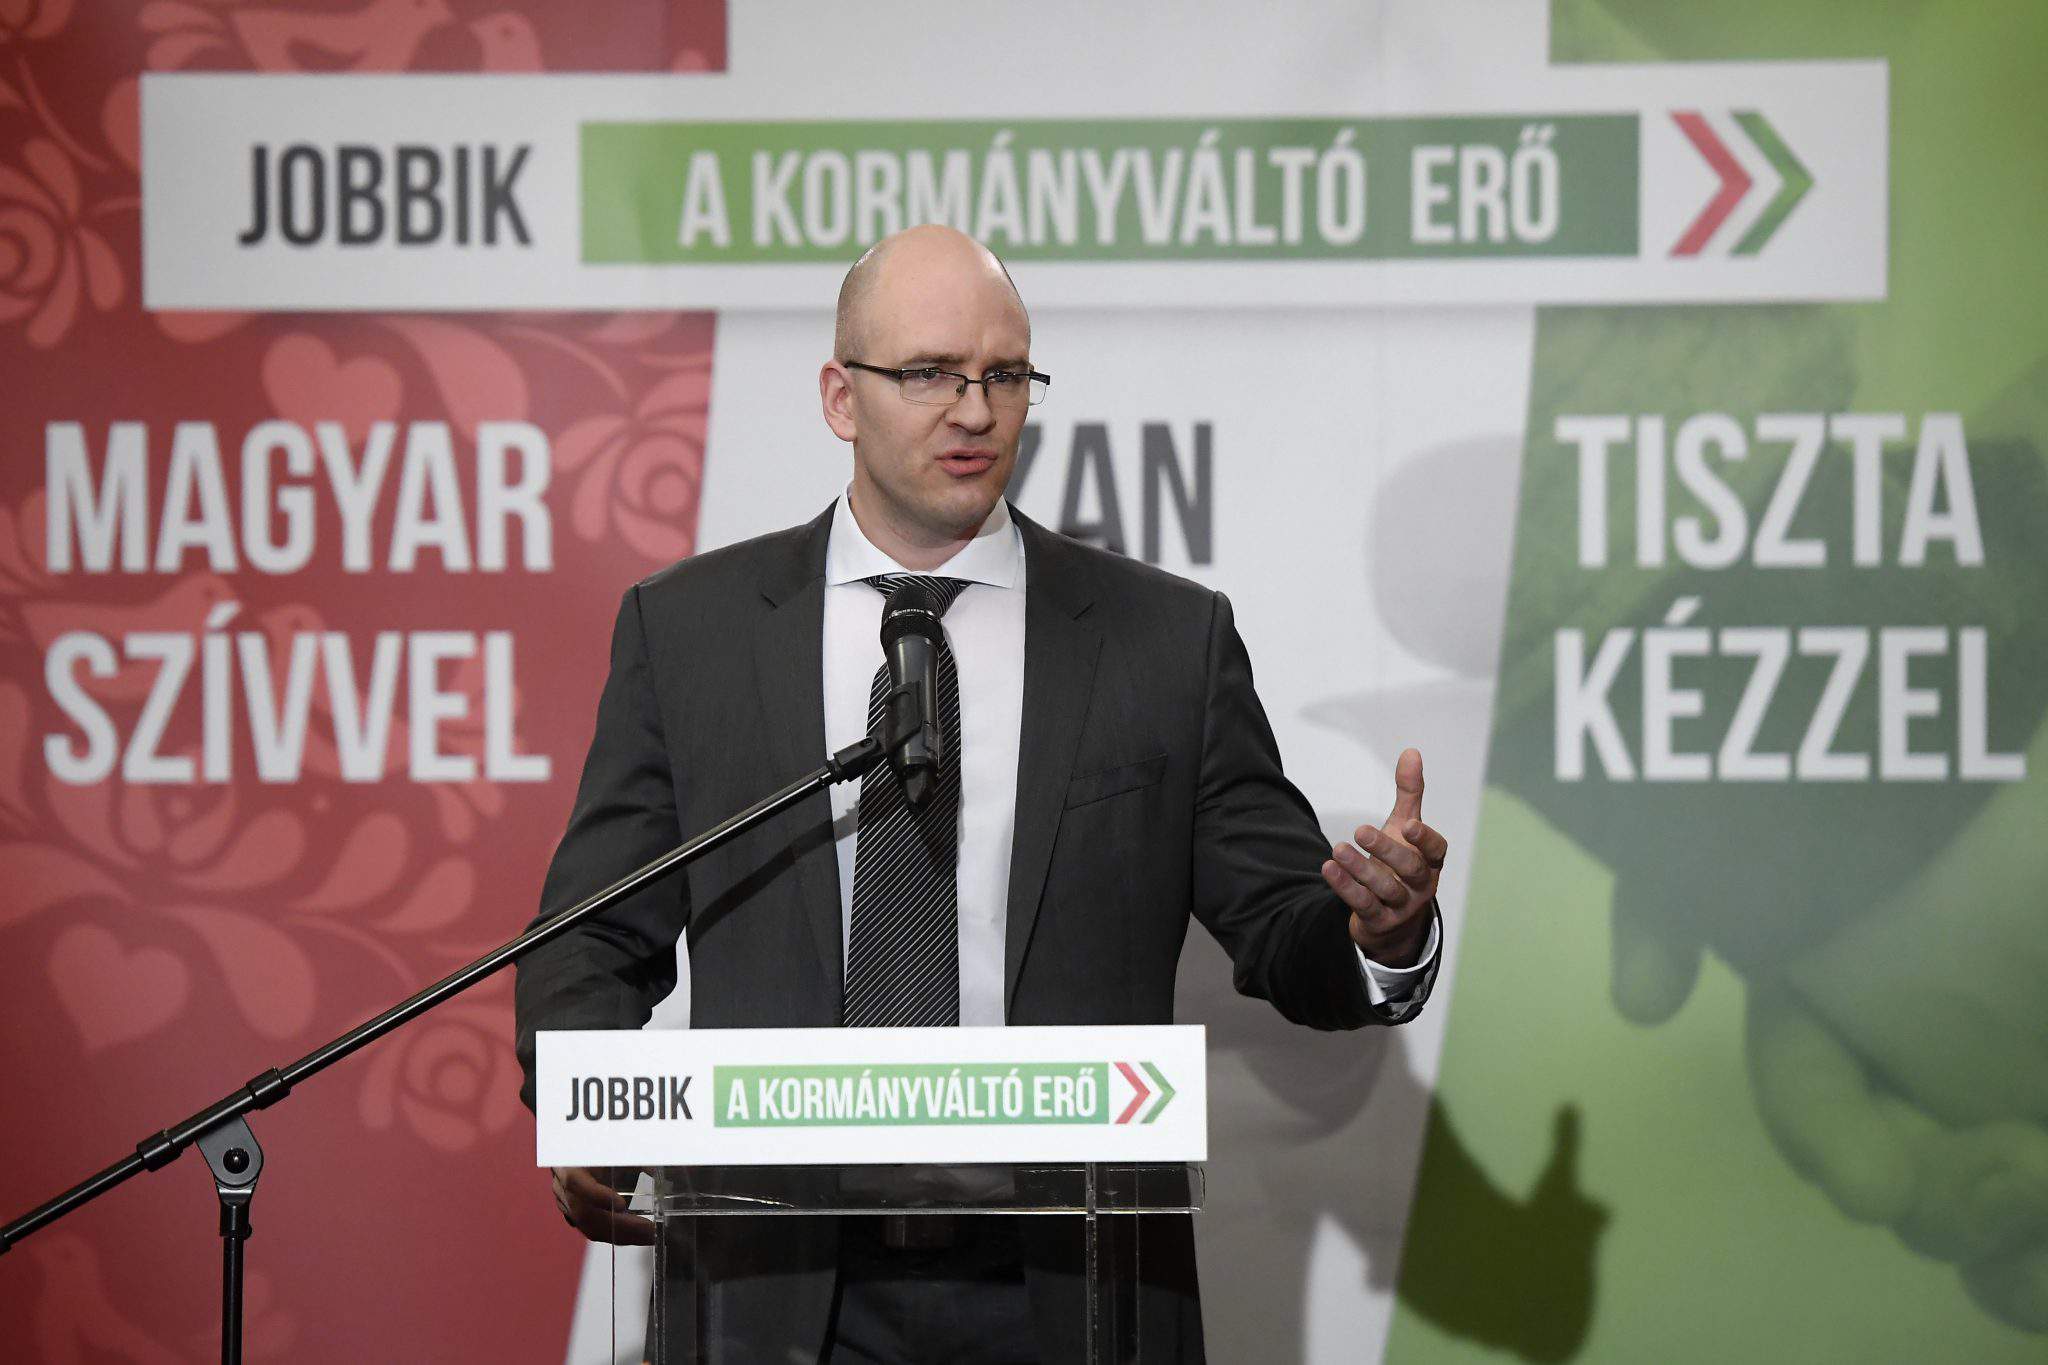 انتخابات 2018 - Jobbik للطعن في نتائج الانتخابات